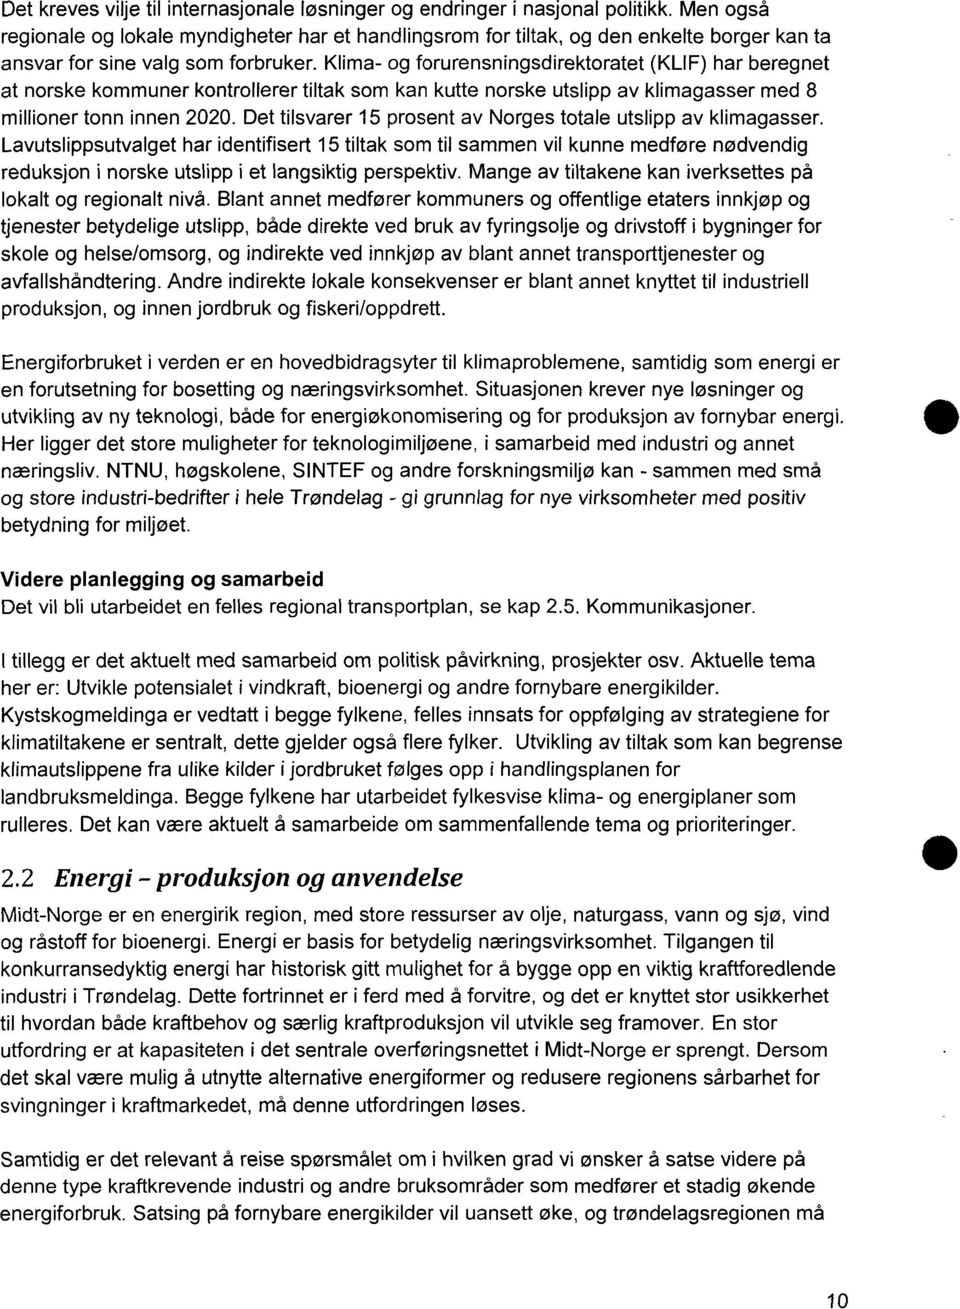 Klima- og forurensningsdirektoratet (KLIF) har beregnet at norske kommuner kontrollerer tiltak som kan kutte norske utslipp av klimagasser med 8 millioner tonn innen 2020.